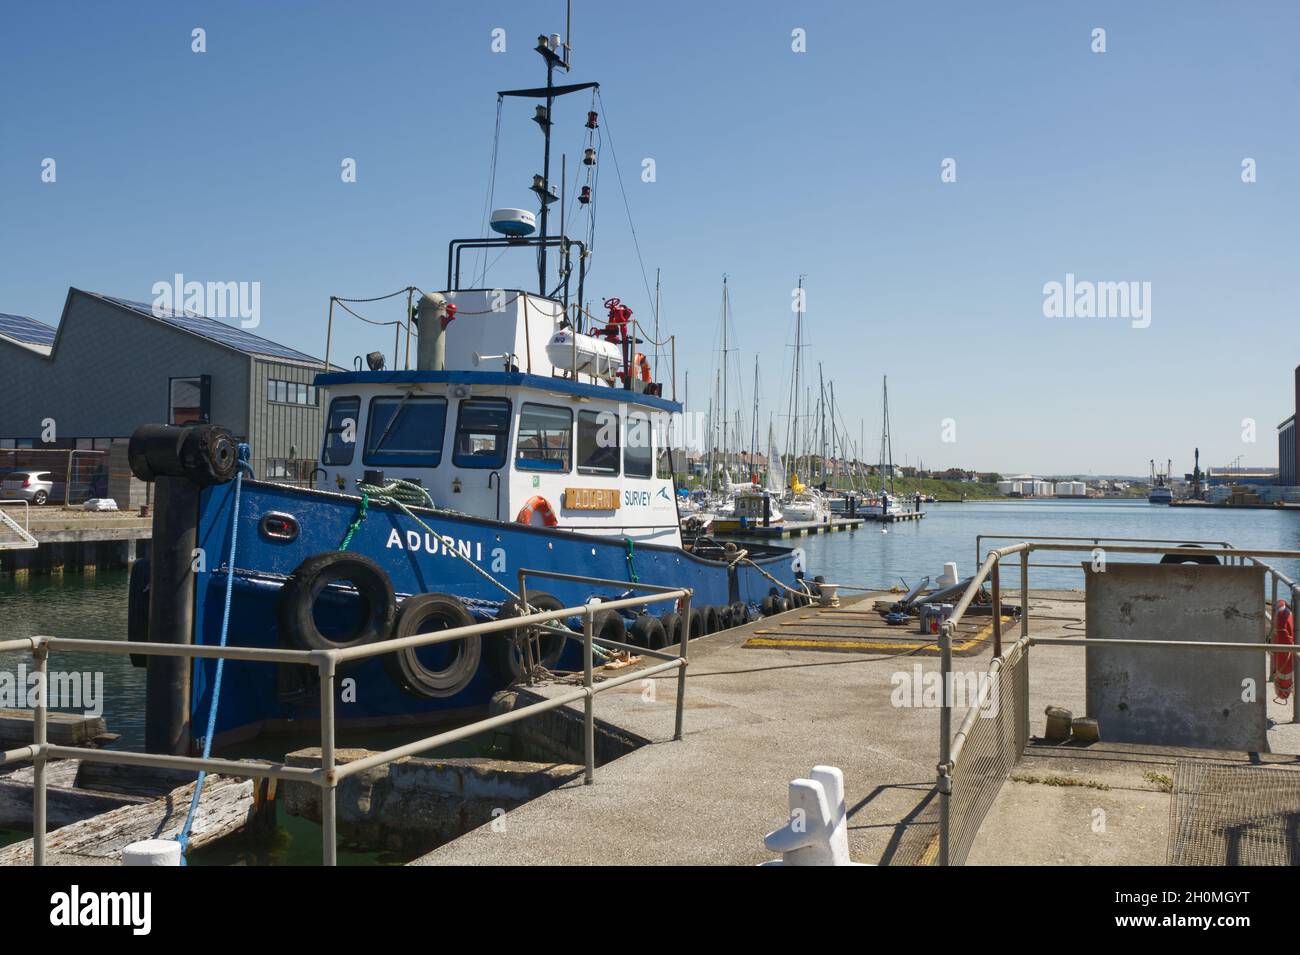 Port et port de Shoreham dans West Sussex, Angleterre.Avec Adurni - navire de surveillance amarré par verrou Banque D'Images